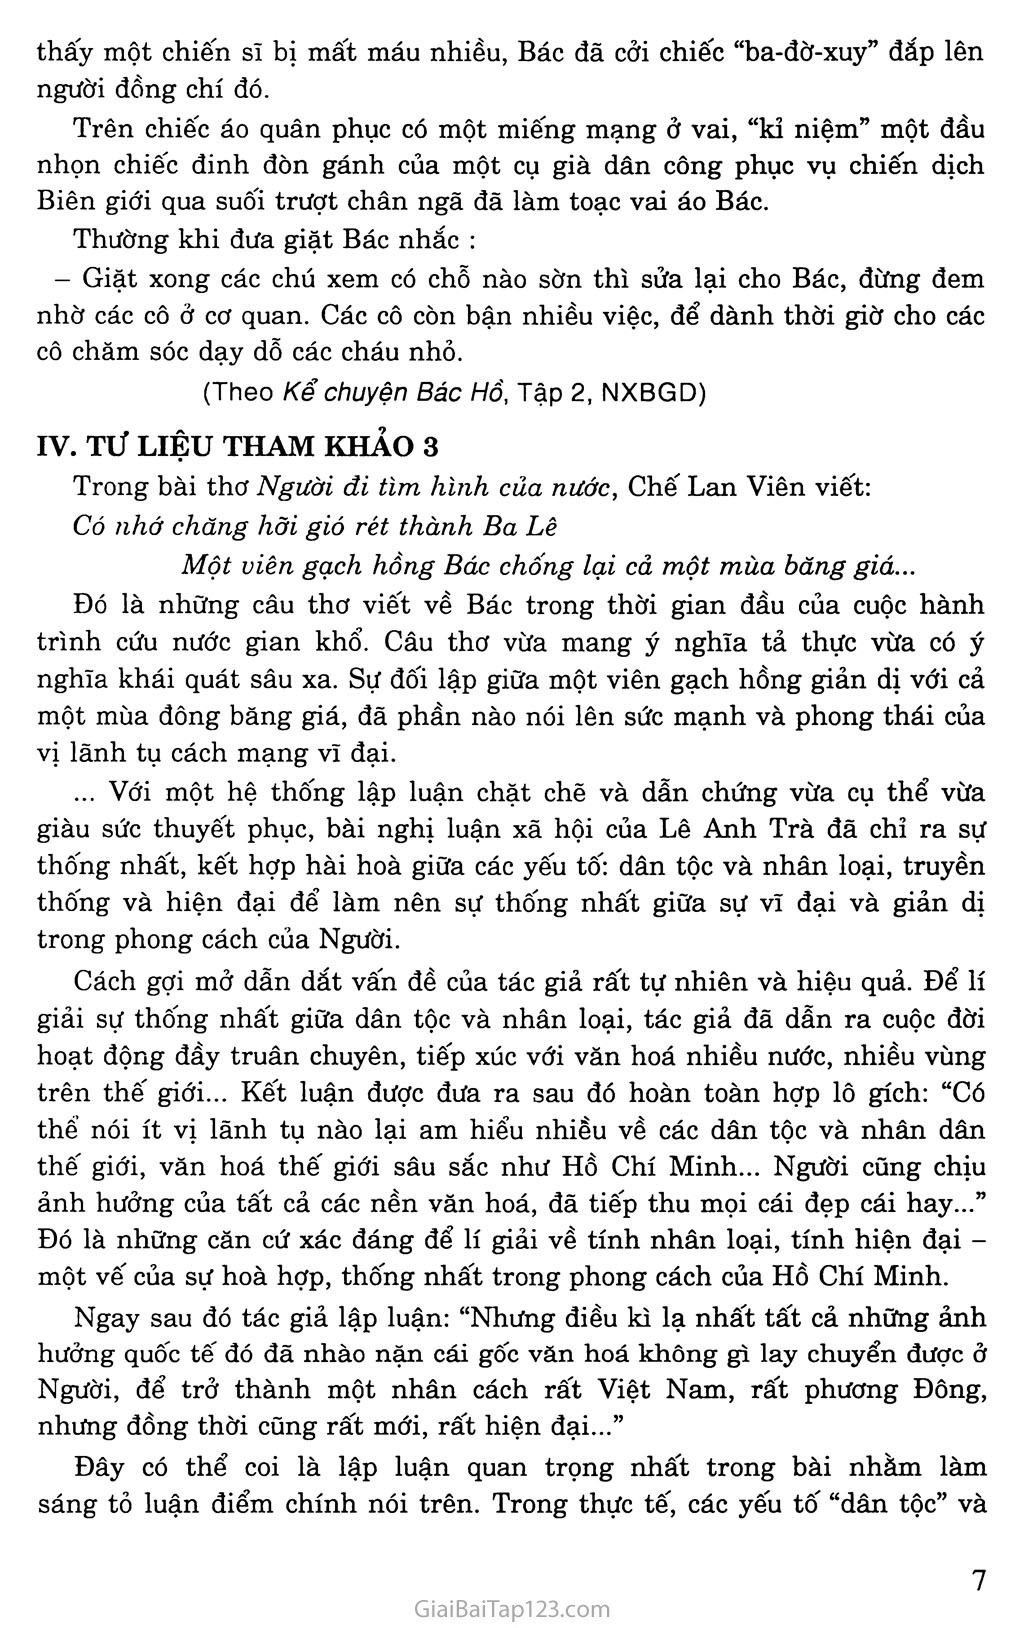 Phong cách Hồ Chí Minh trang 3